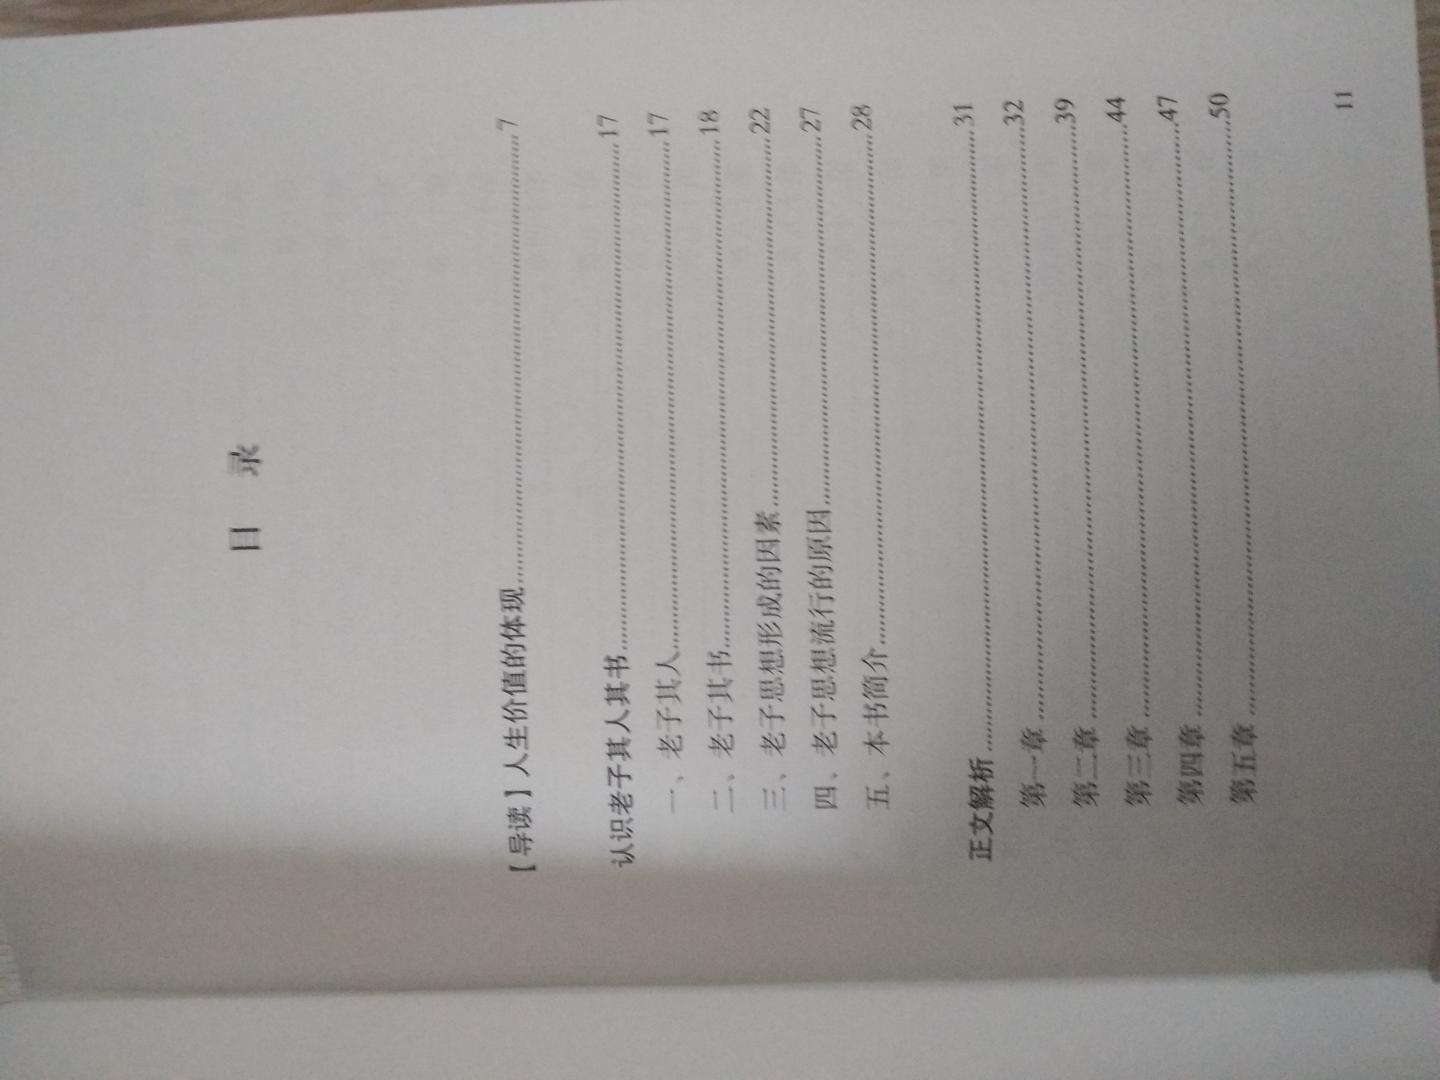 这本《老子：生命的大智慧》是台湾余培林编著的，九州出版社引进，是60册《中国历代经典宝库》丛书之一，2017年11月一版一印【第1次印刷】，印制精良，锁线精装，用纸考究，排版悦眼，这本老子治这套丛书中质量较高的一种。快递发货快，末梢站点工作人员热情又负责。